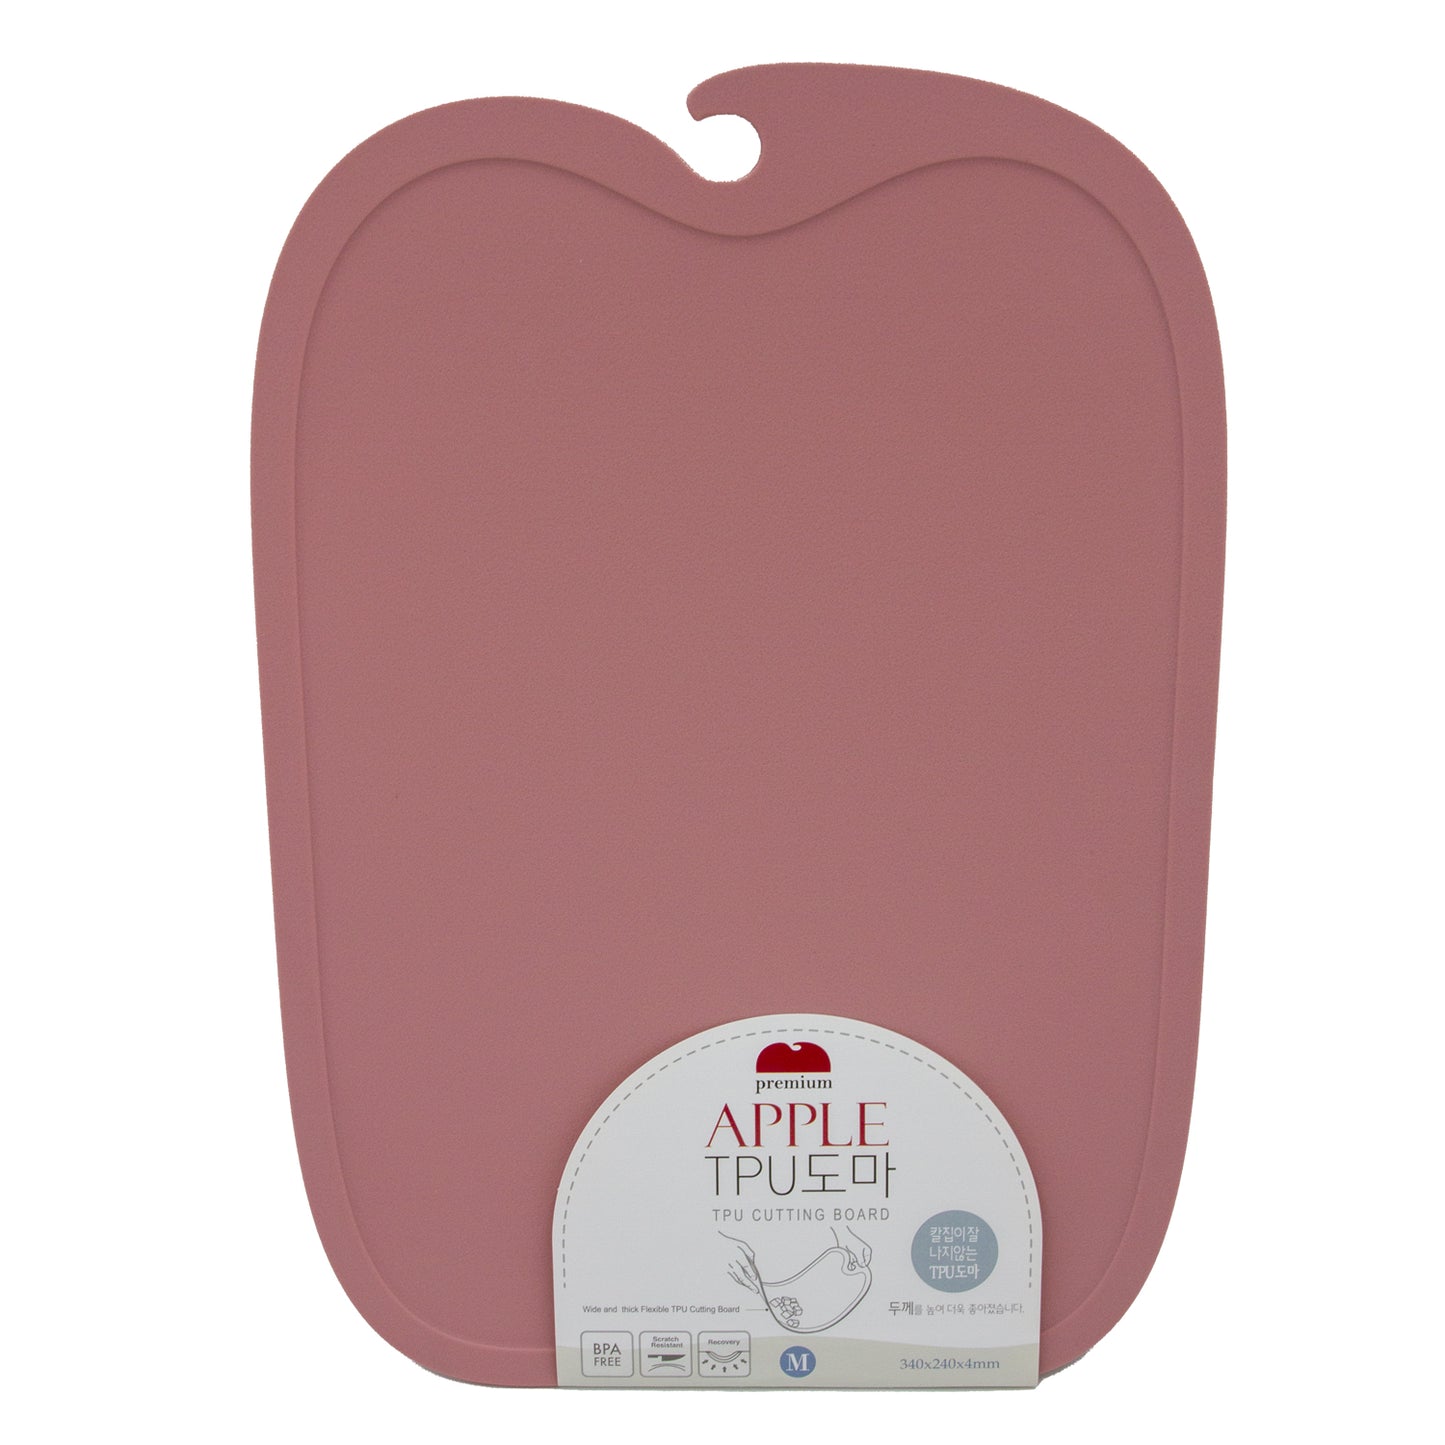 Apple TPU Cutting Board Medium - Pink/Mint